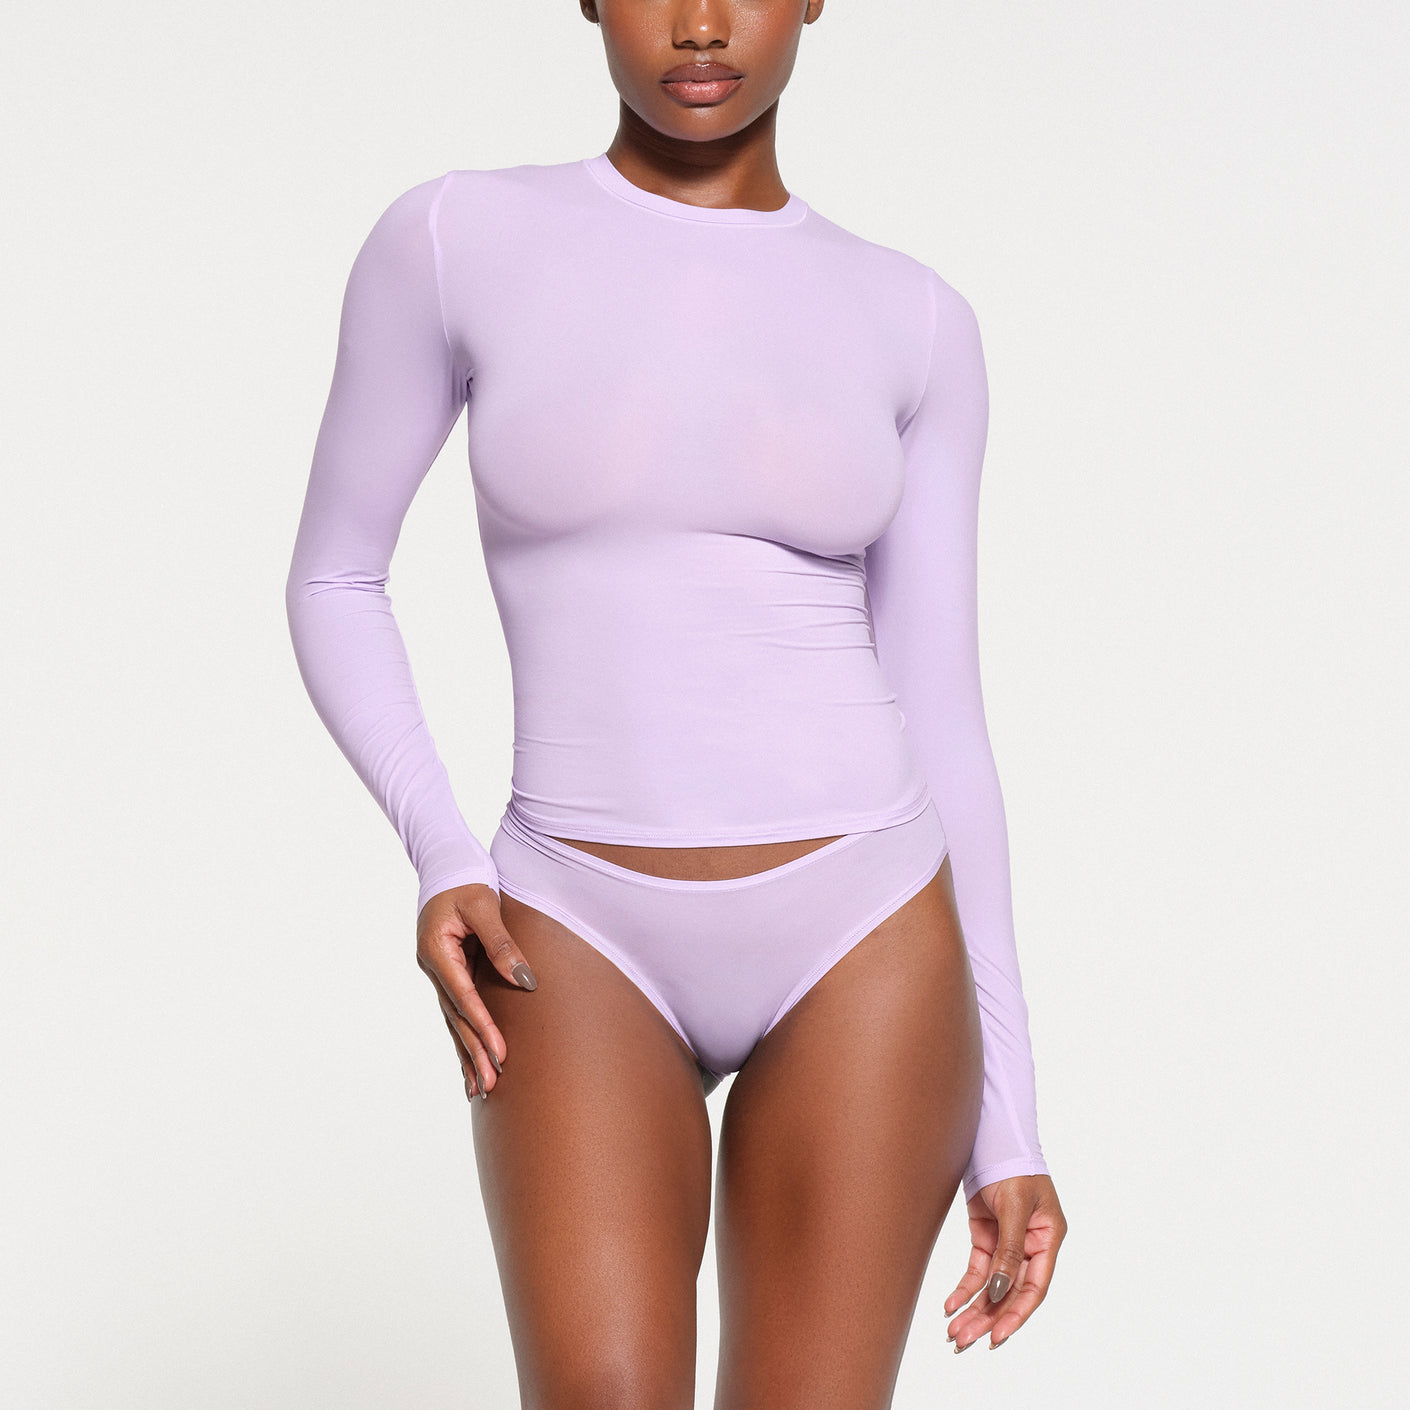 VS T-shirt Push-up Lounge Bra in Lilac size XS, Women's Fashion